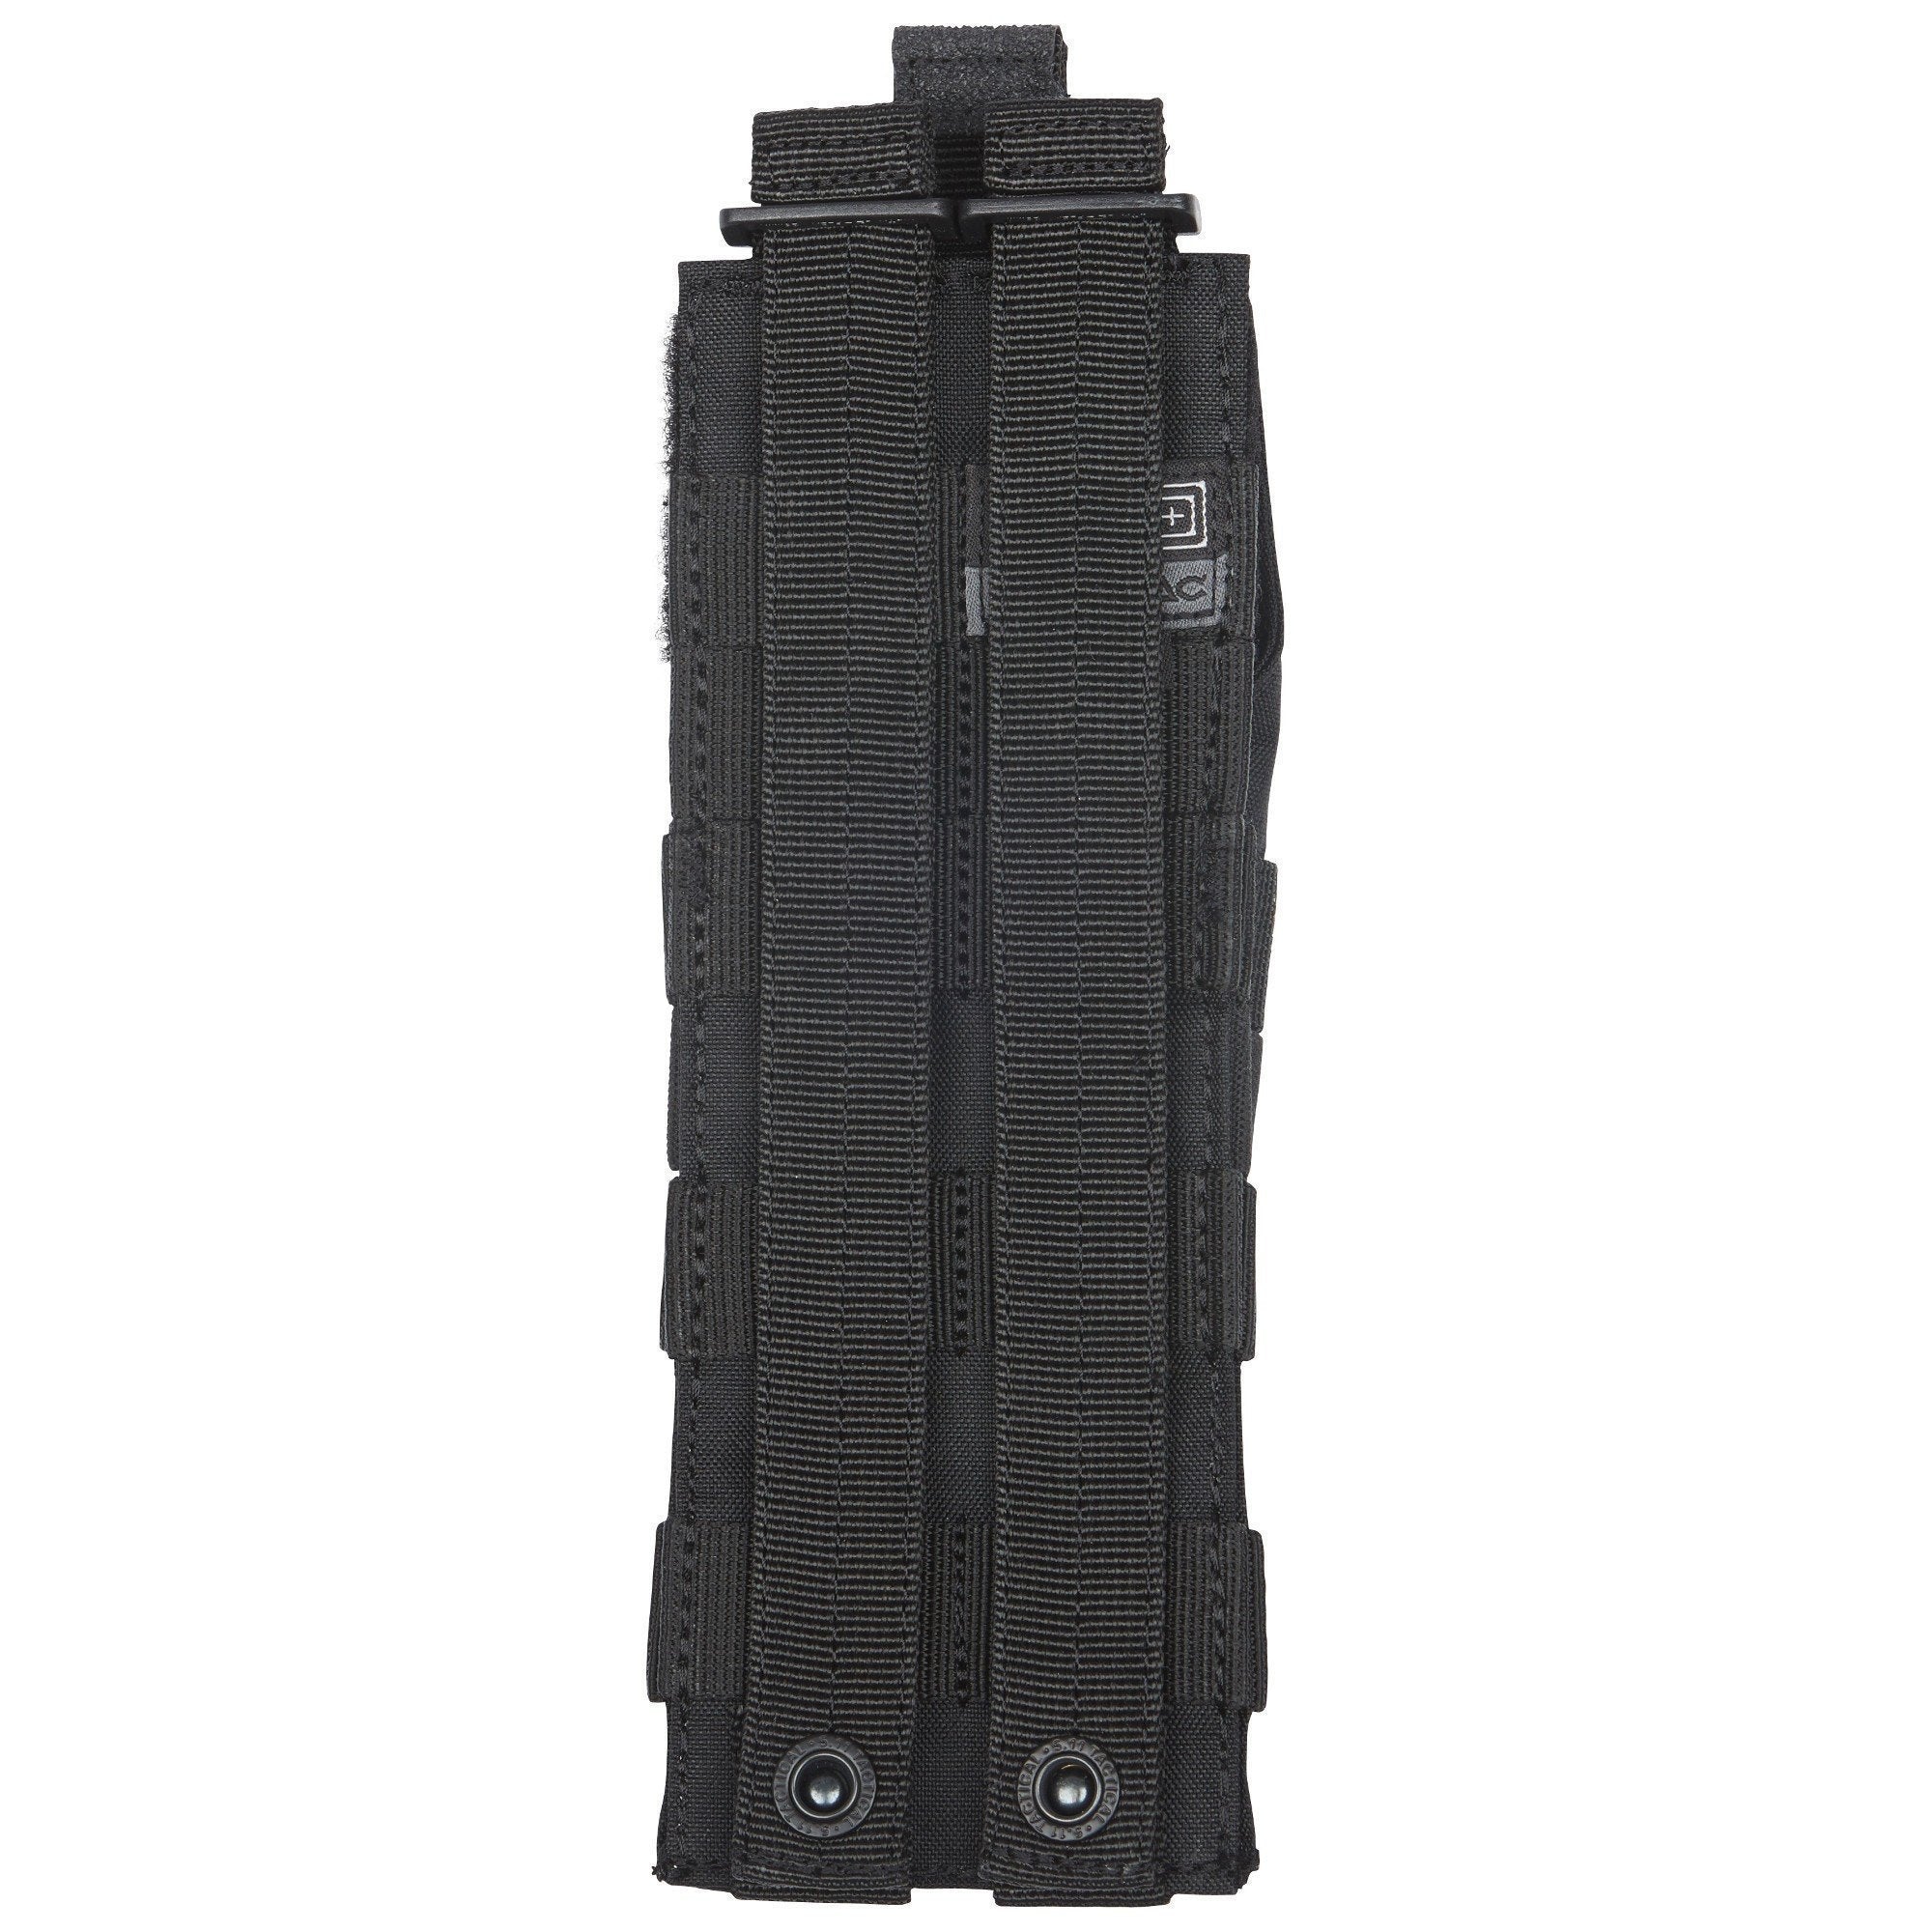 5.11 Tactical Rigid Cuff Case Accessories 5.11 Tactical Tactical Gear Supplier Tactical Distributors Australia